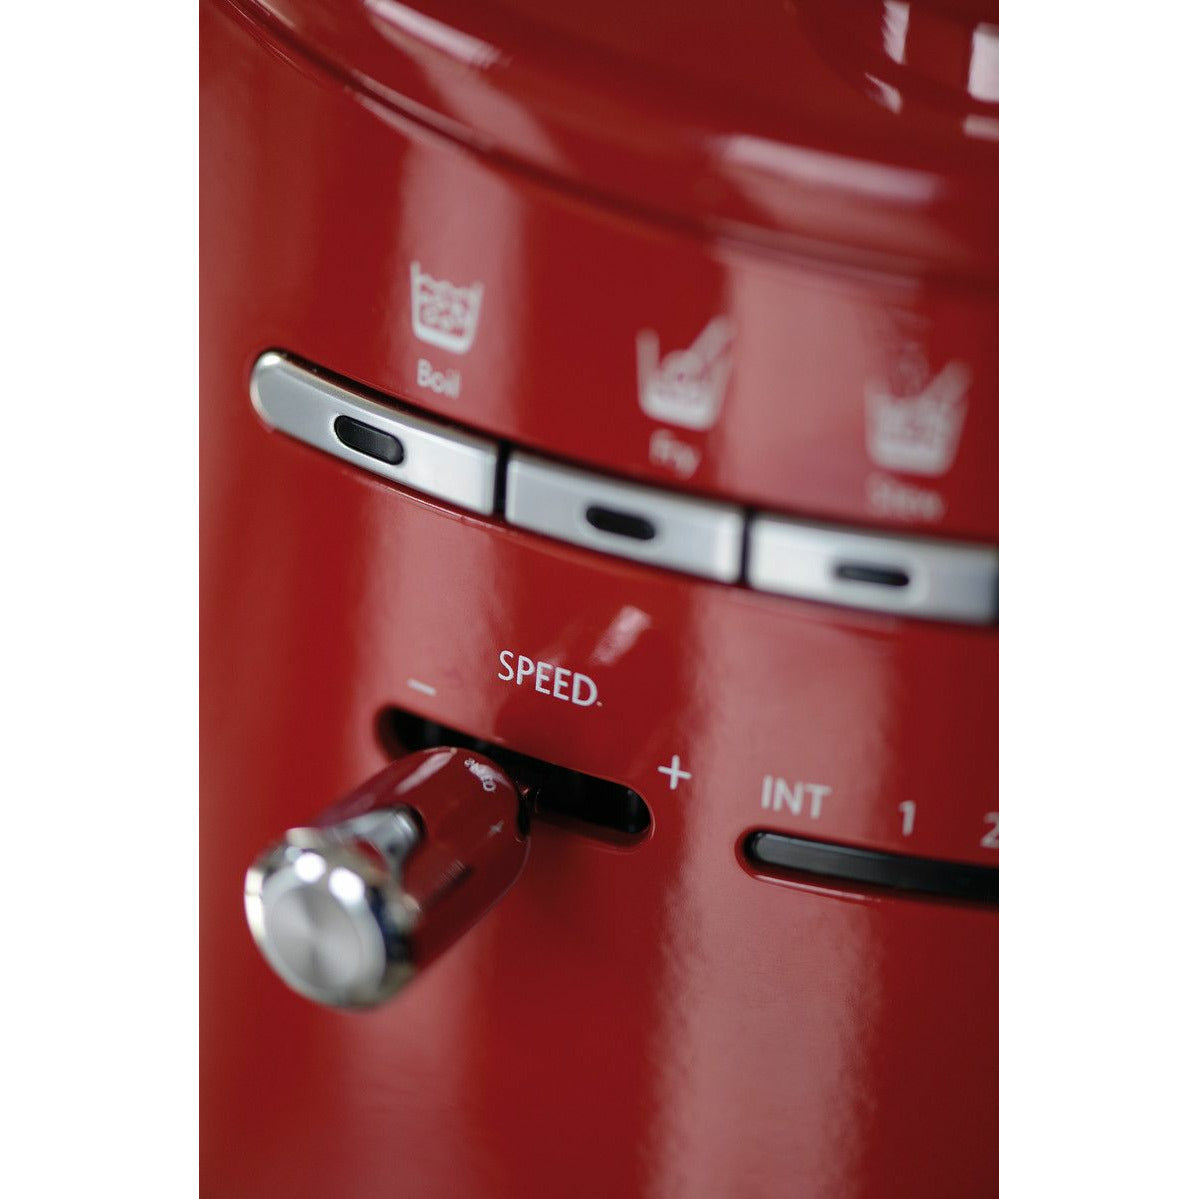 KitchenAid 5KCF0104 Artisan Cook Processor, Red Metallic